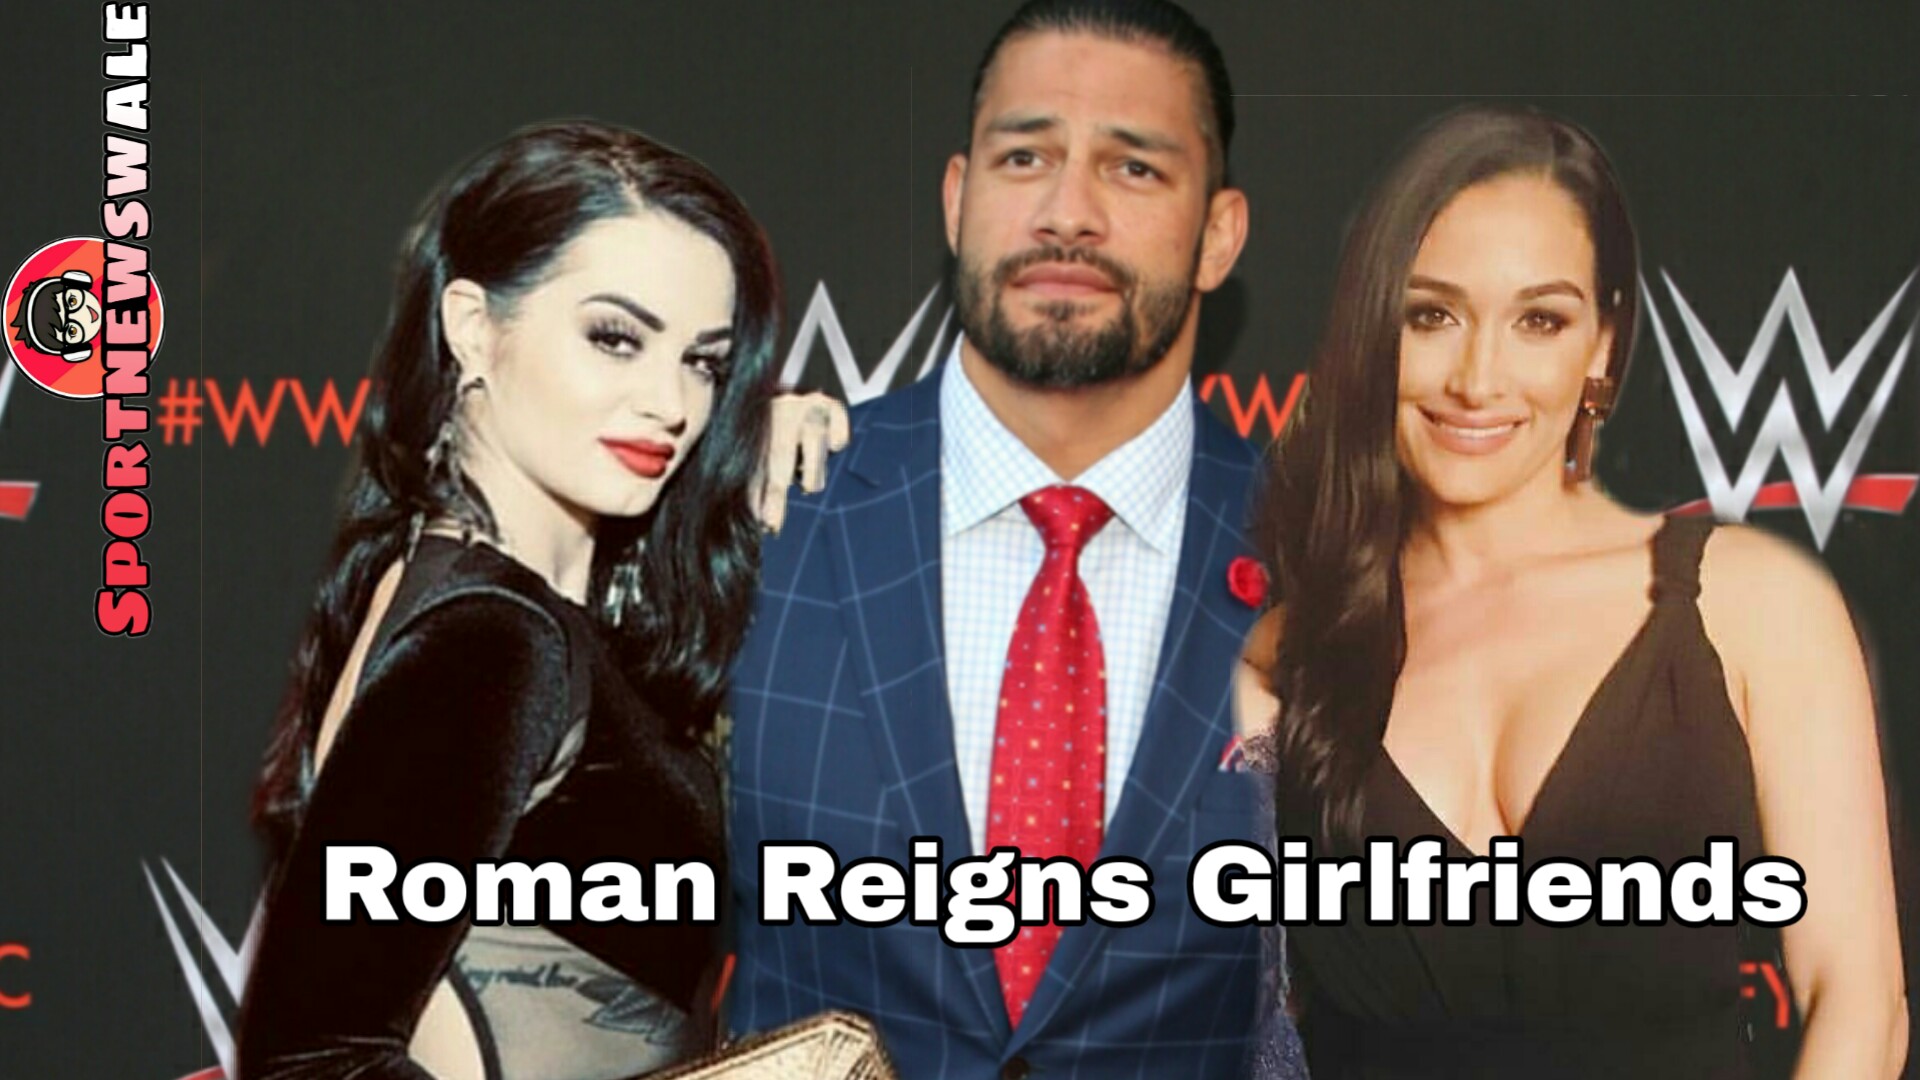 Roman Reigns Girlfriend - Roman Reigns Girl Friend - HD Wallpaper 